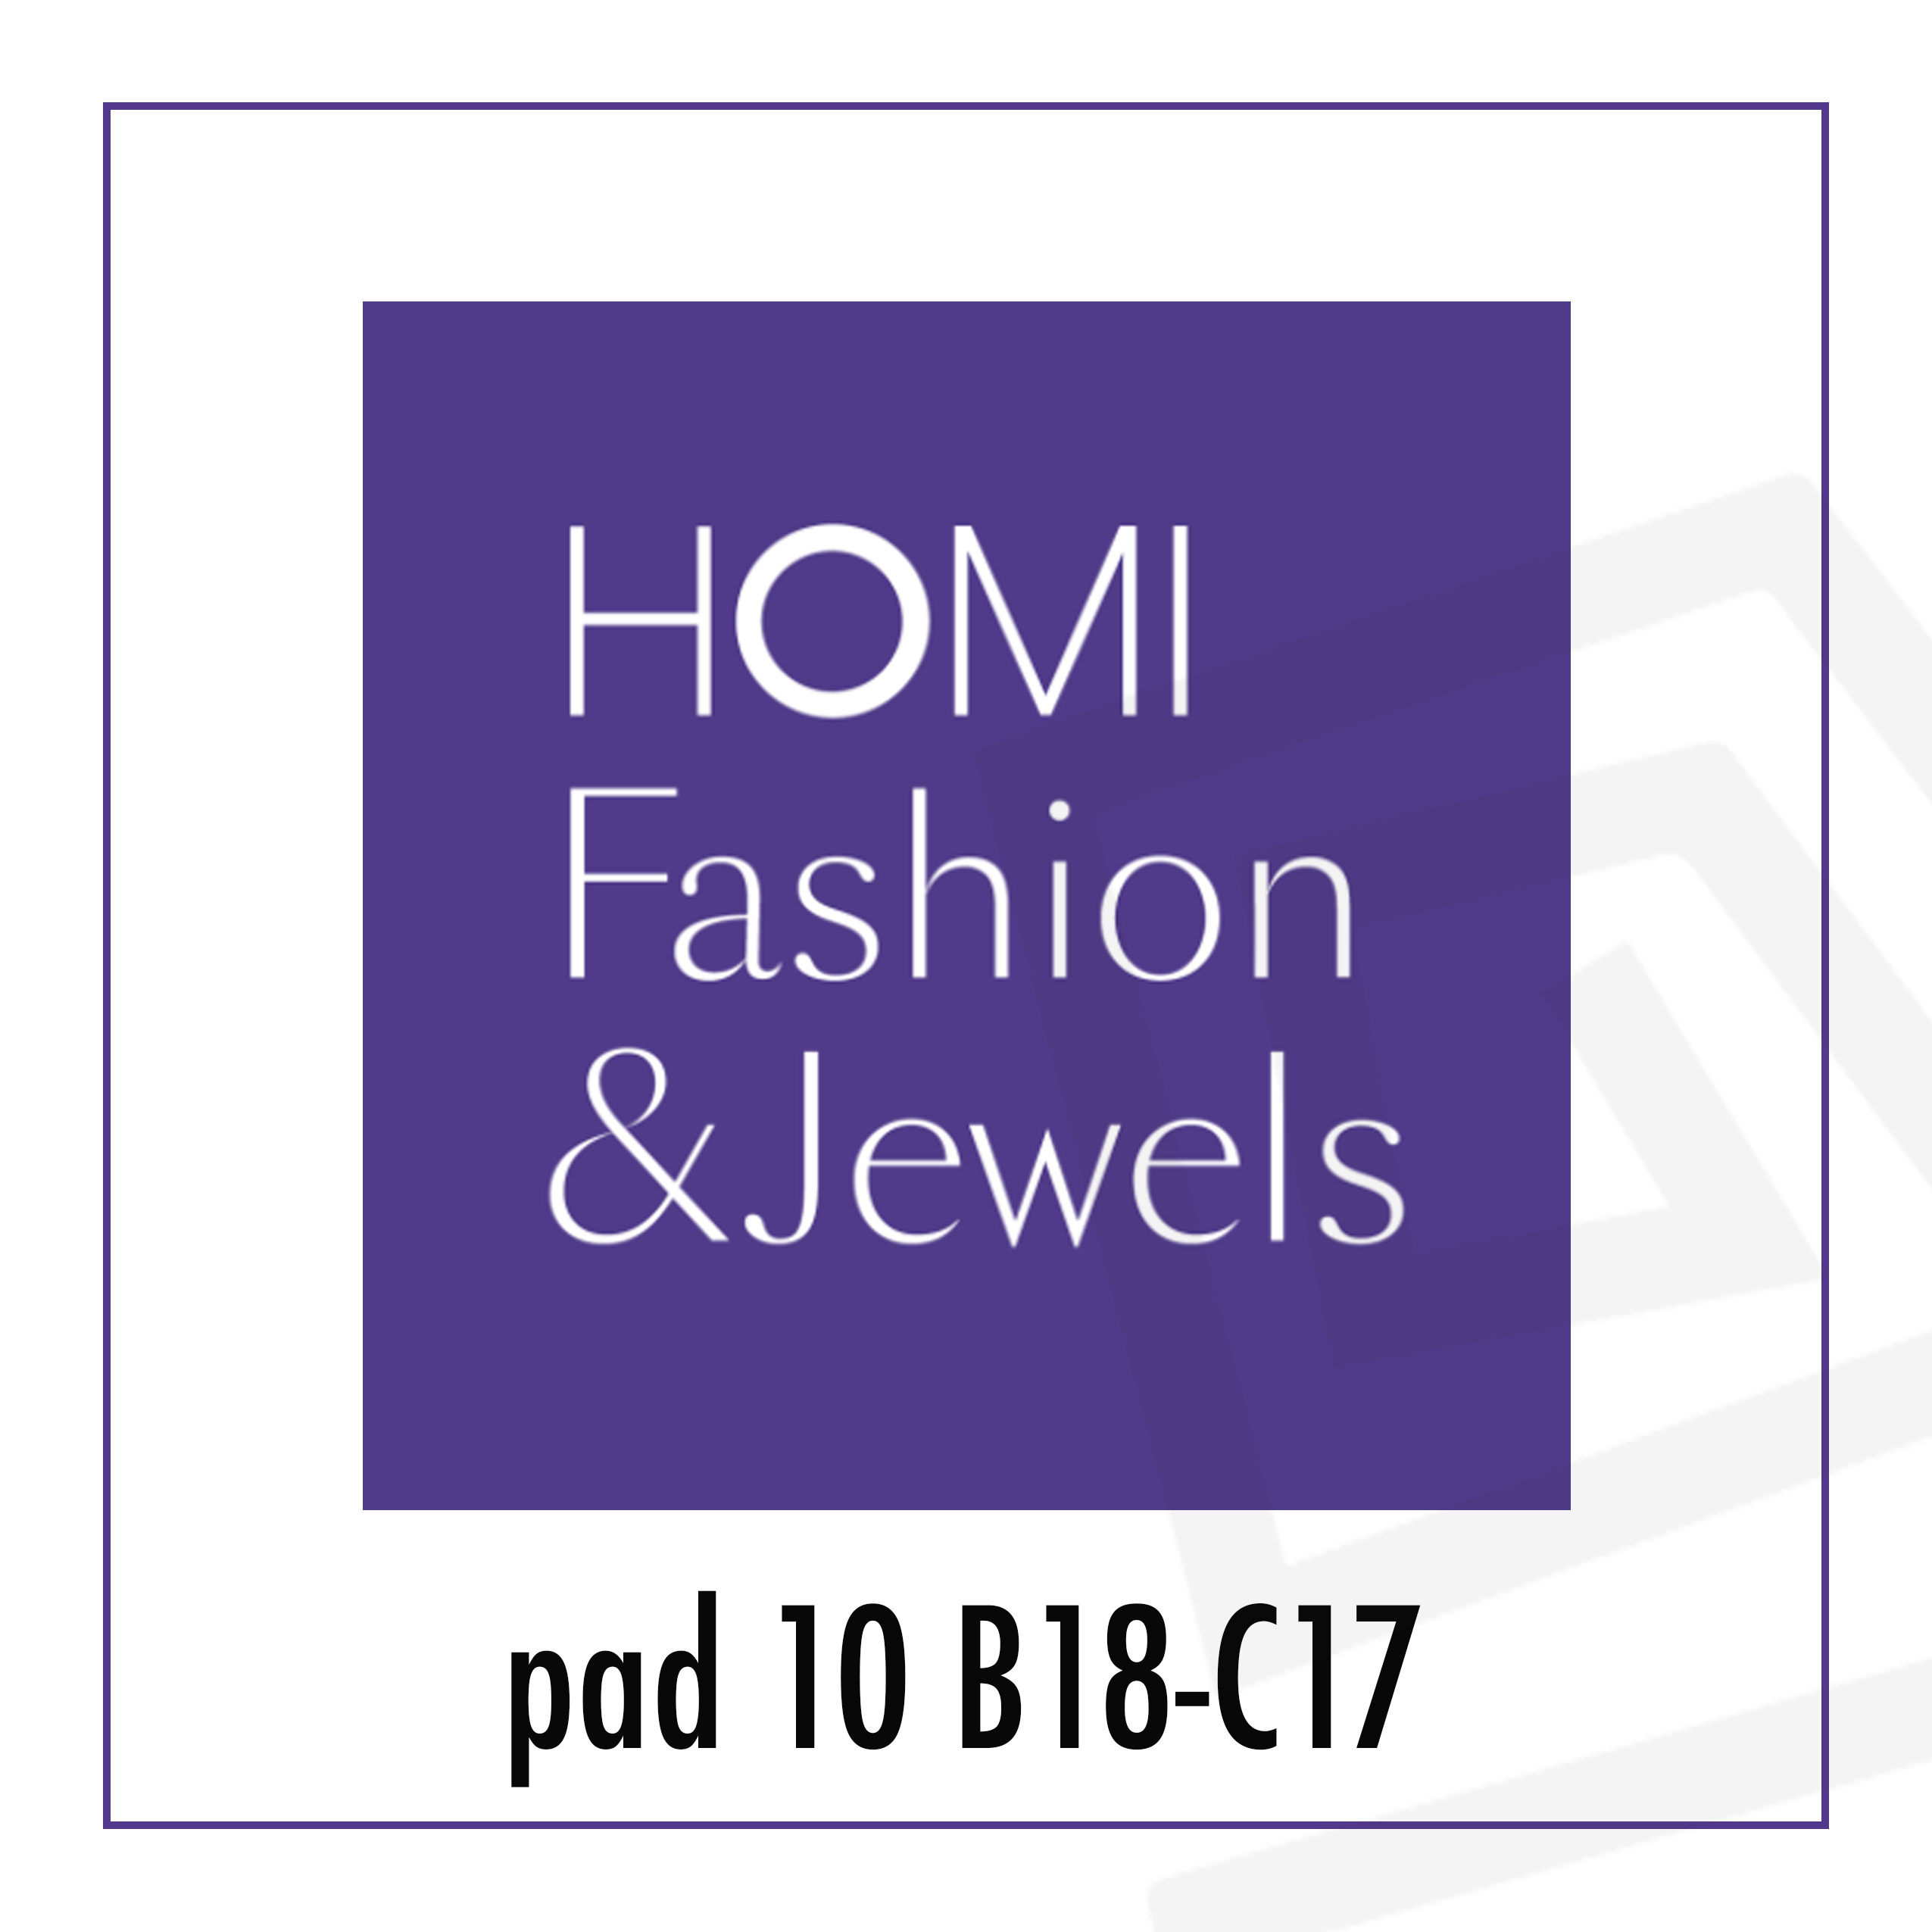 HOMI Fashion&Jewels